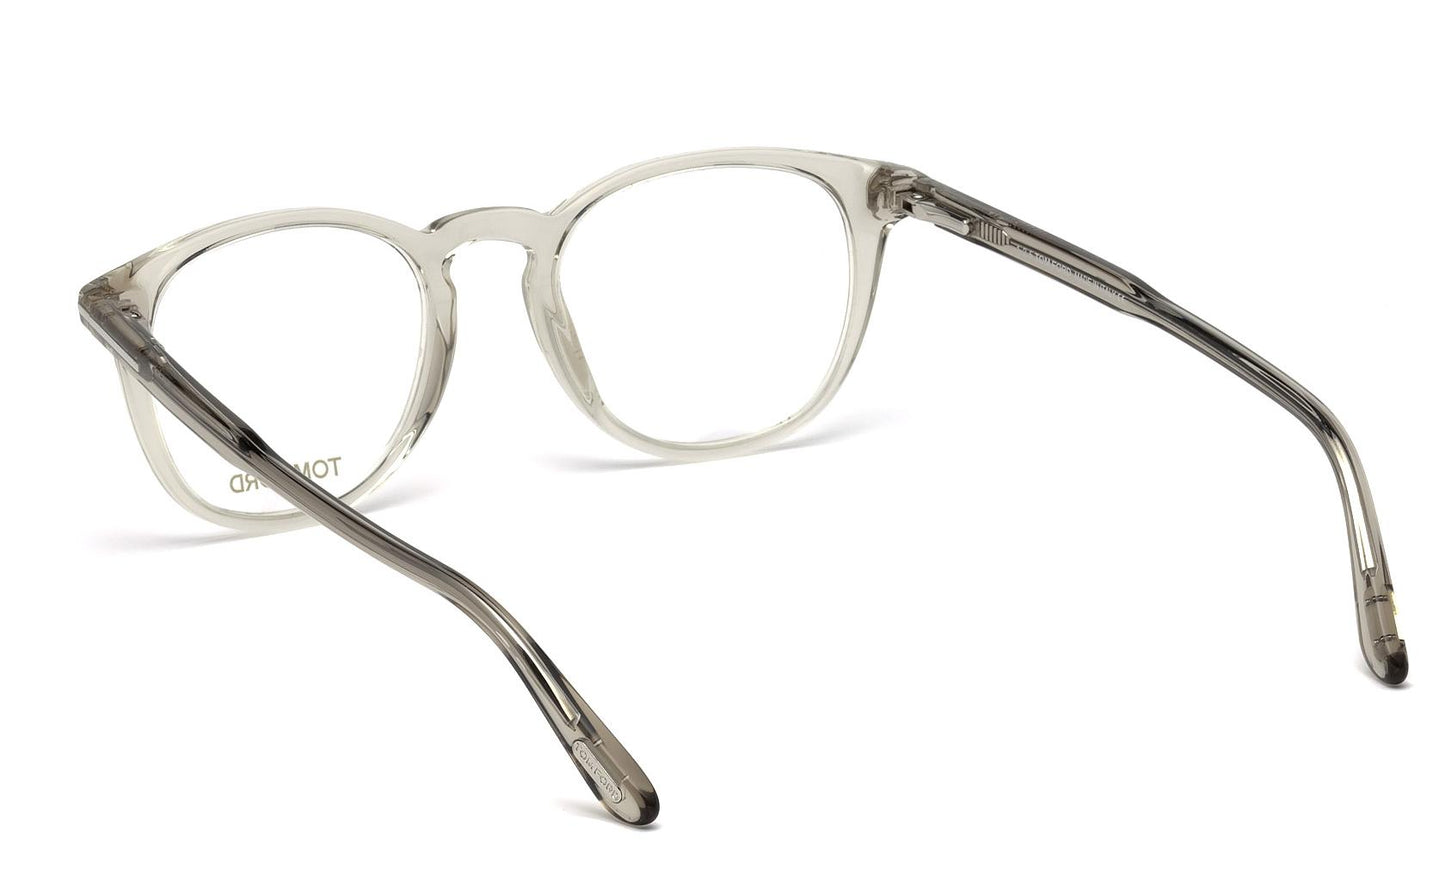 Tom Ford Eyeglasses FT5401 020